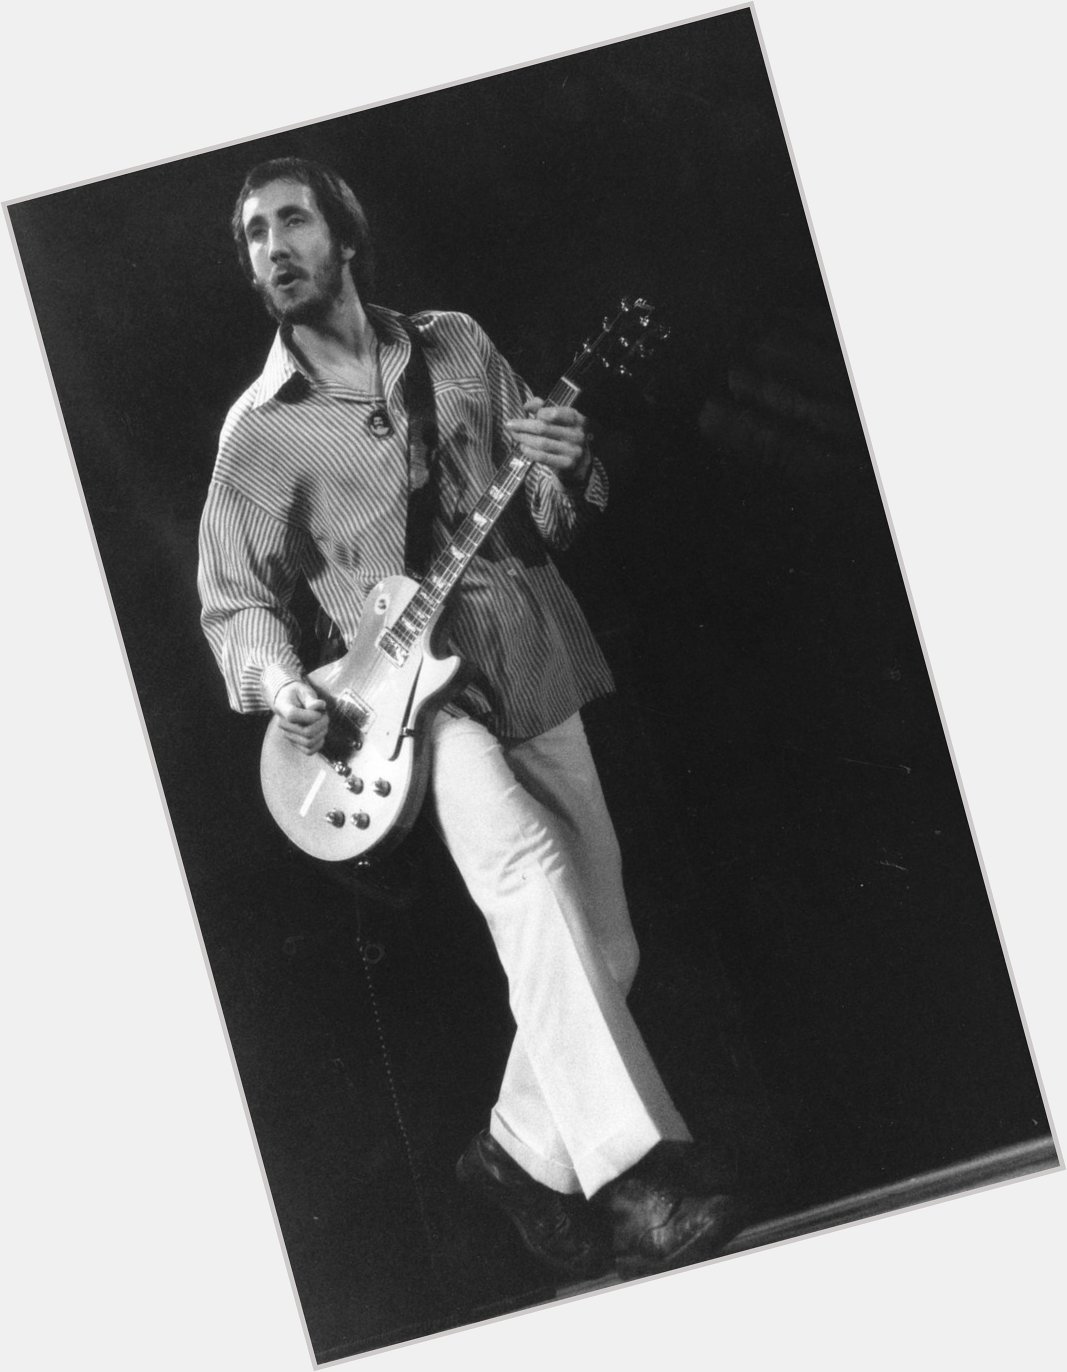 Happy birthday shoutout to Pete Townshend! 